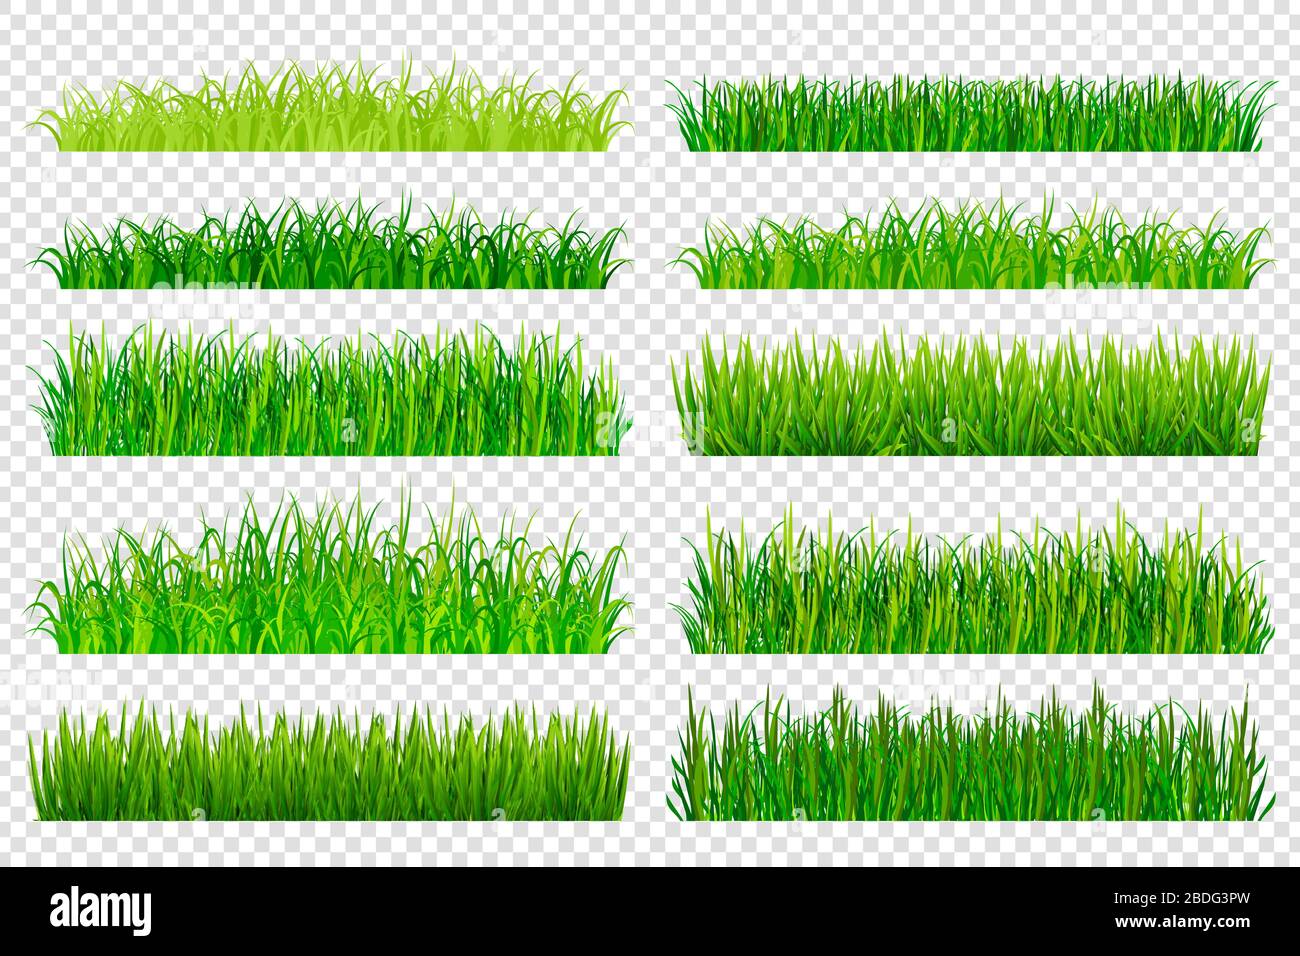 Federgrünes Gras grenzt isoliert auf transparentem Hintergrund. Vektorgrafiken Stock Vektor